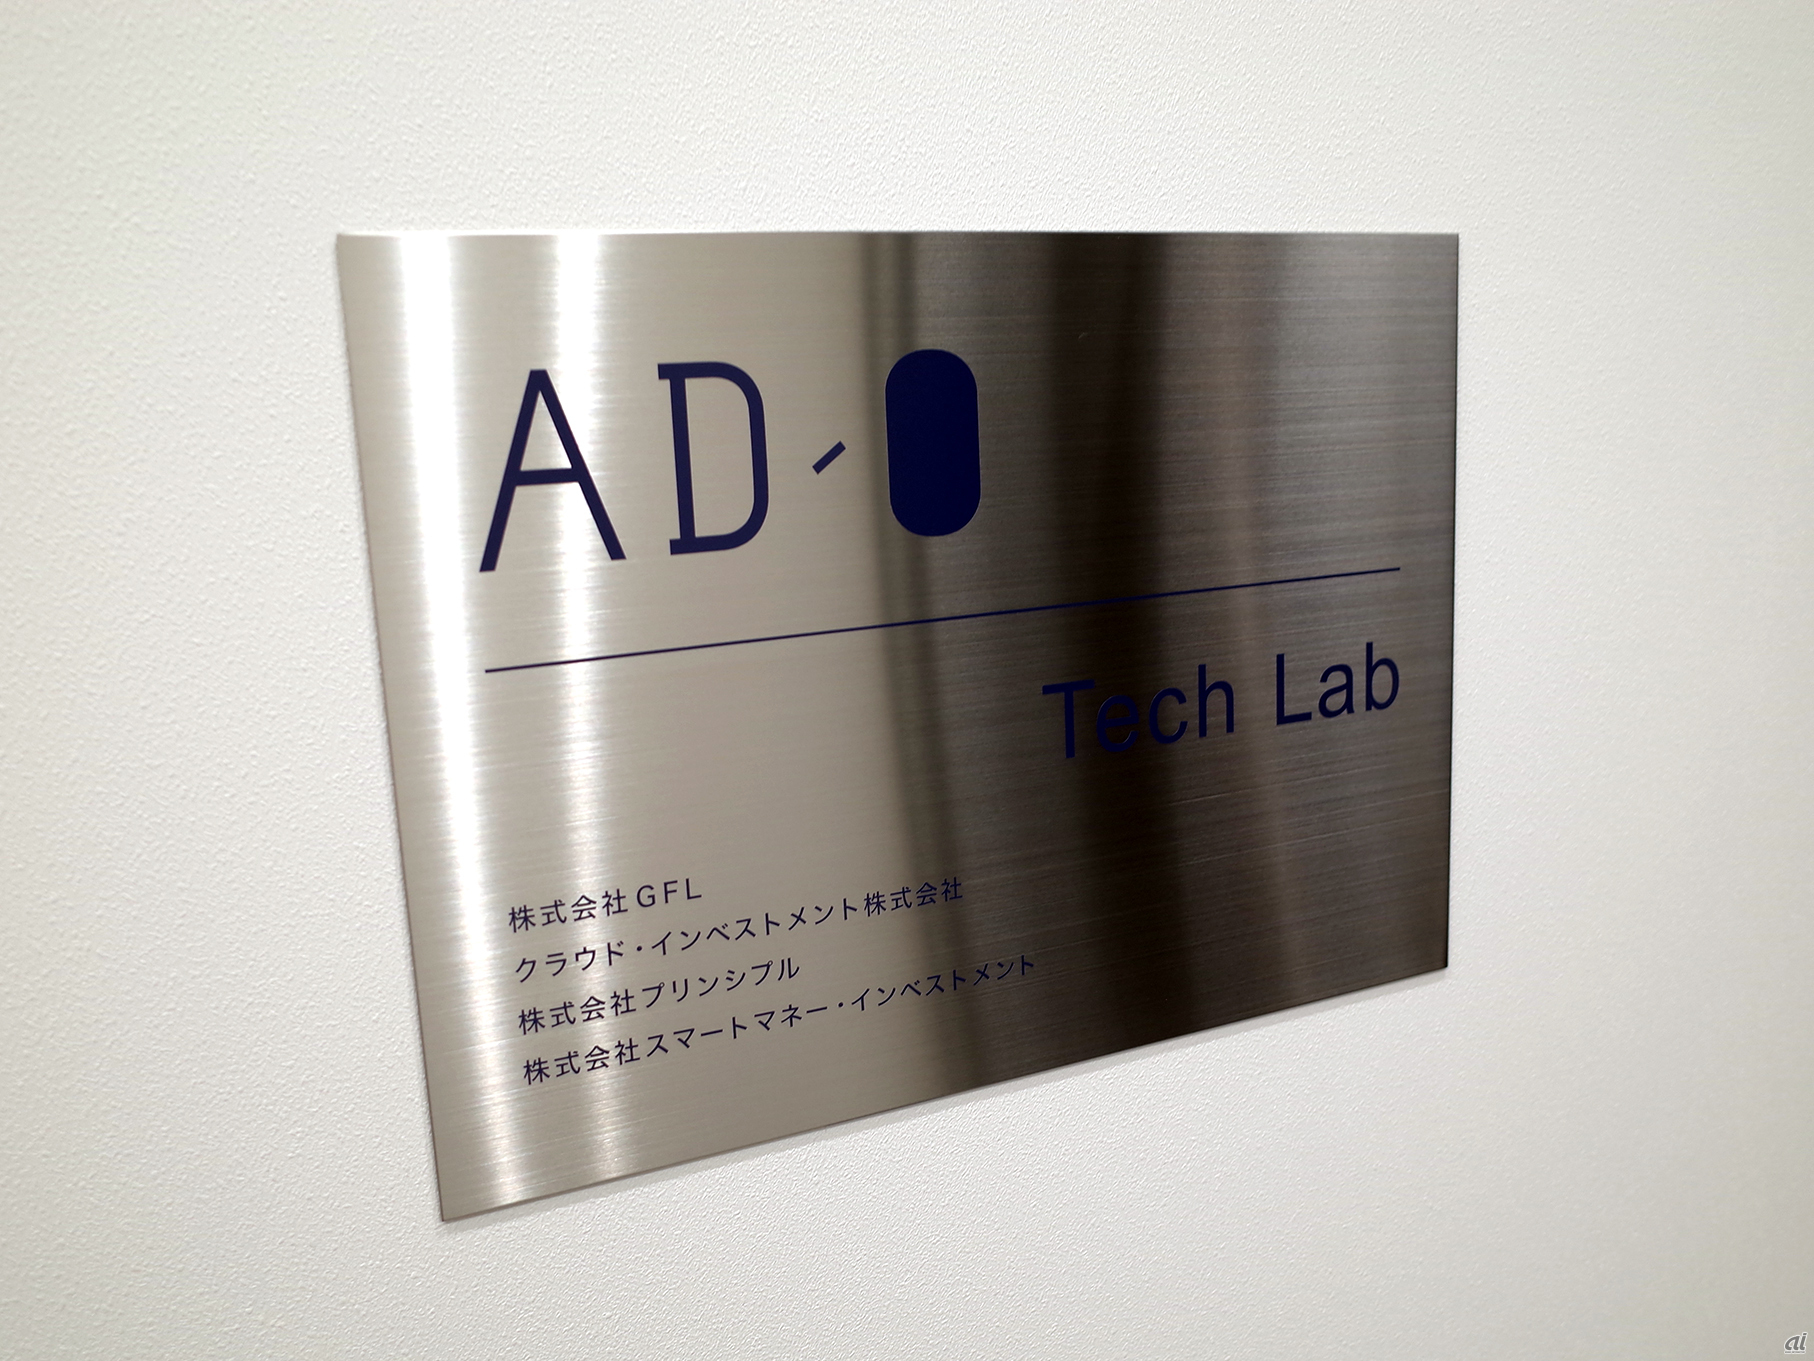 「AD-O Tech Lab」のエントランスには、4社の企業名が刻まれていた